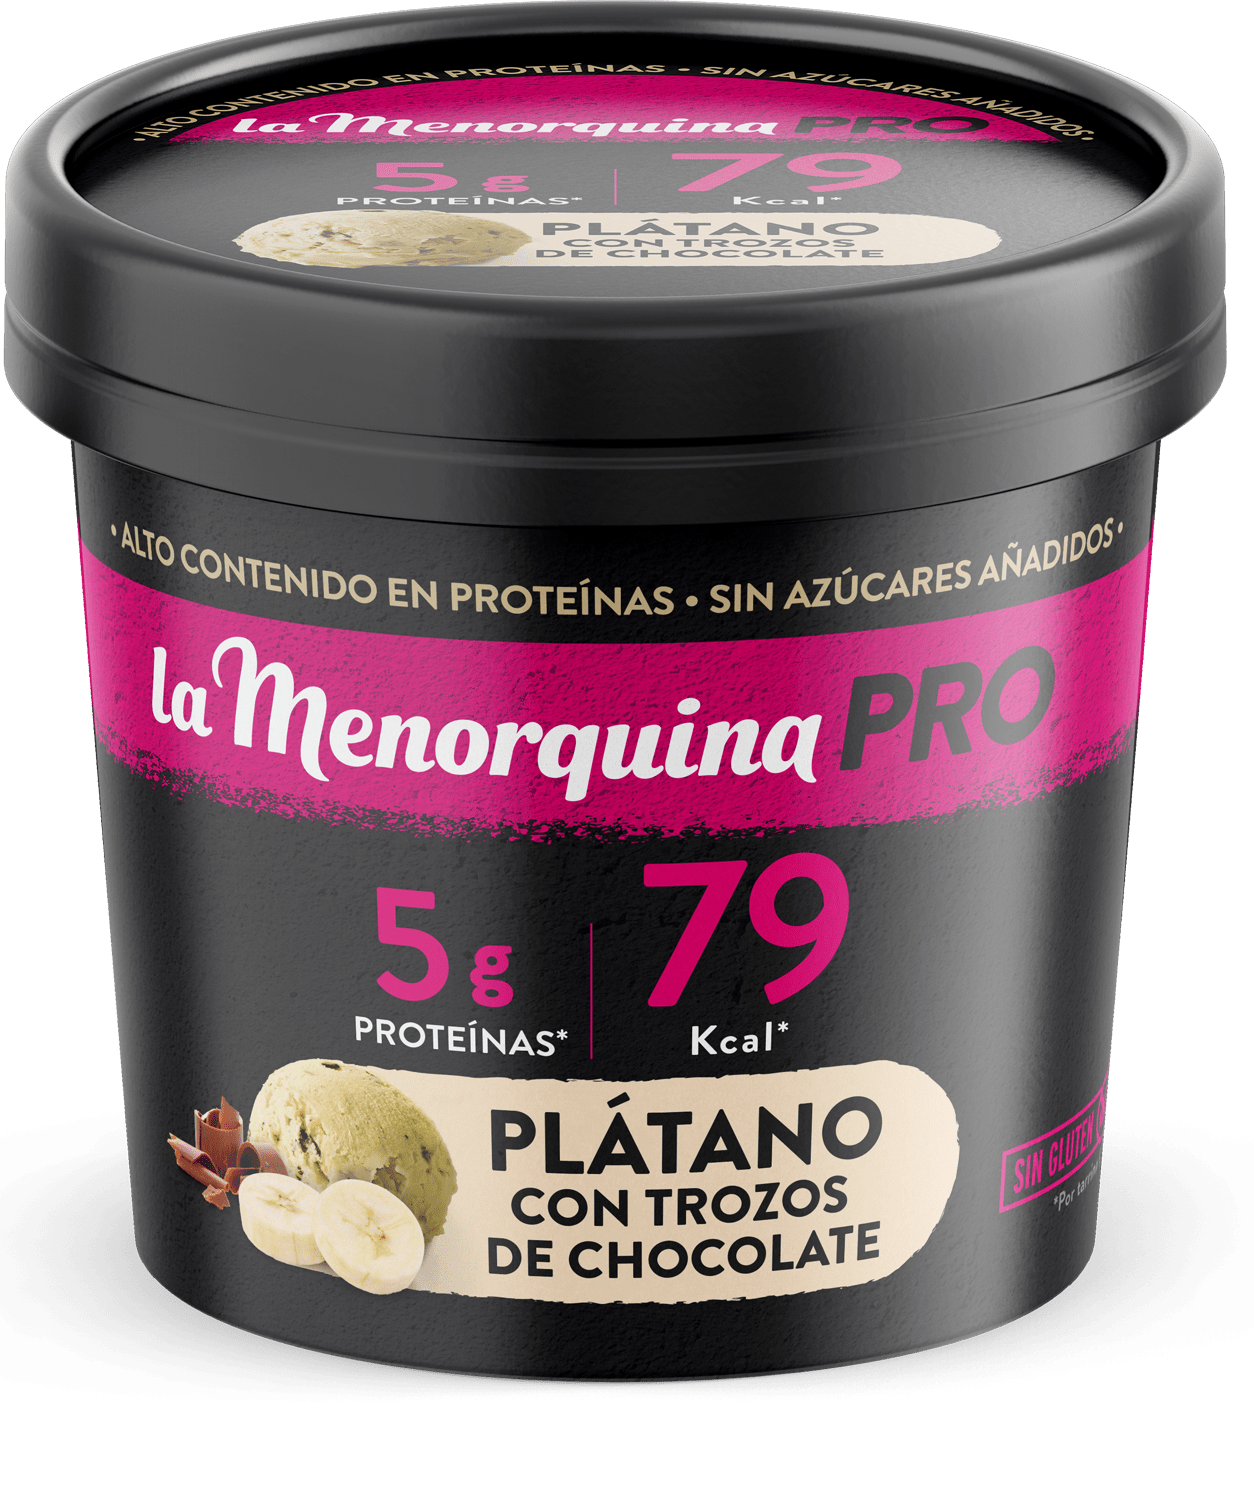 /en/products/snacks/platano-con-trozos-de-chocolate/